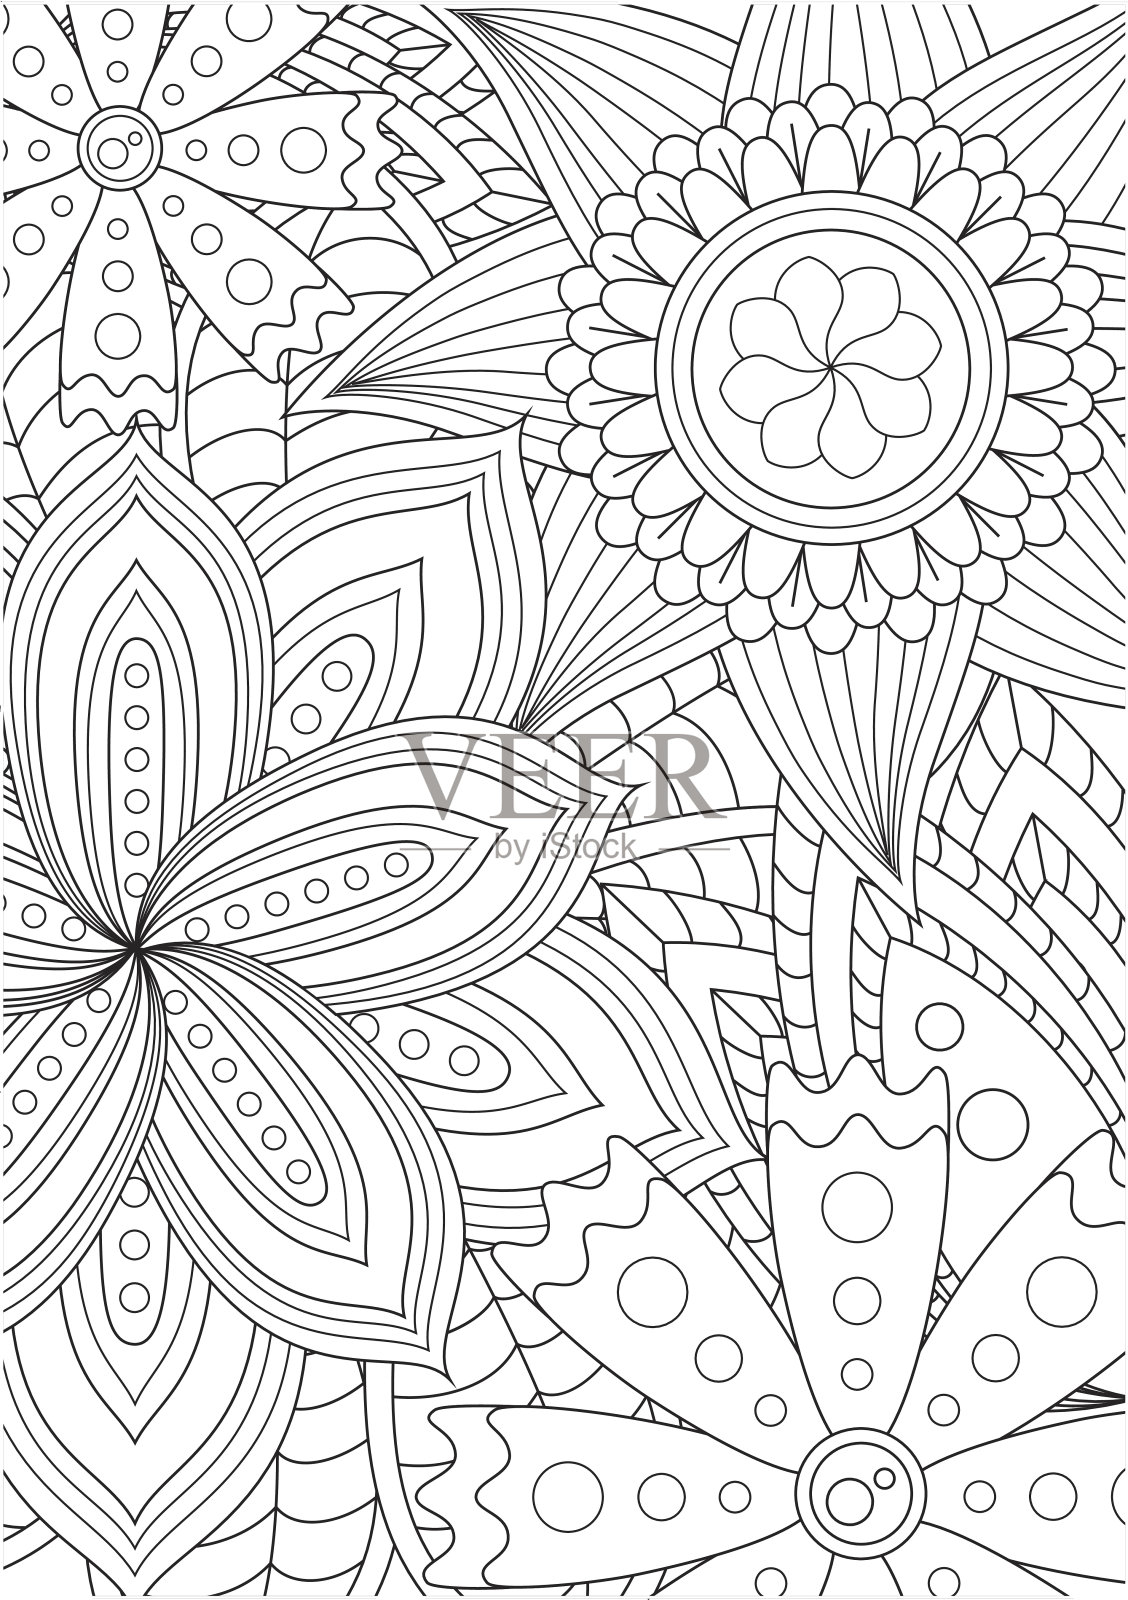 黑白花卉图案的涂色书在涂鸦风格。插画图片素材